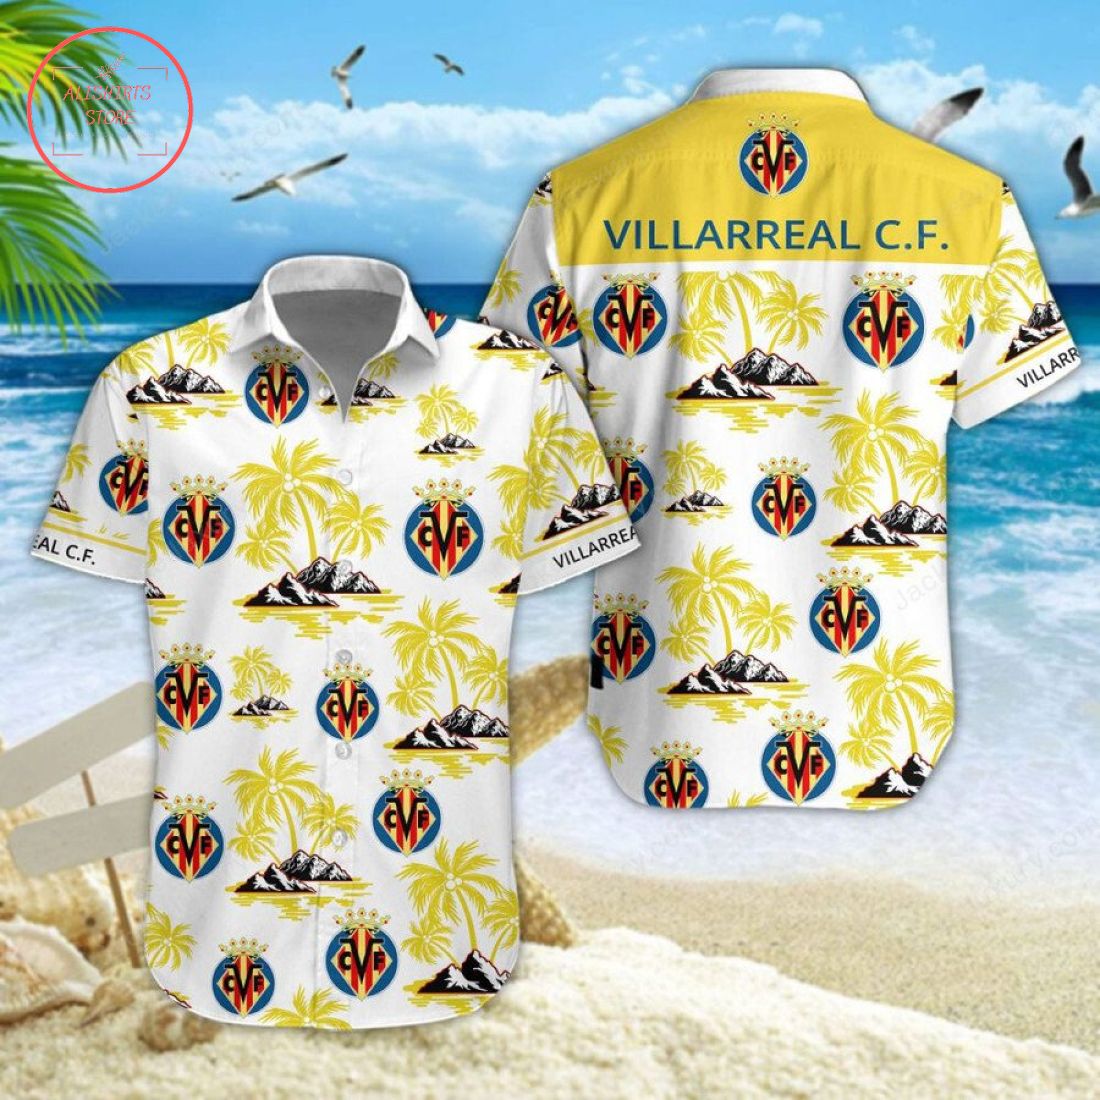 Villarreal CF Hawaiian Shirt and Shorts